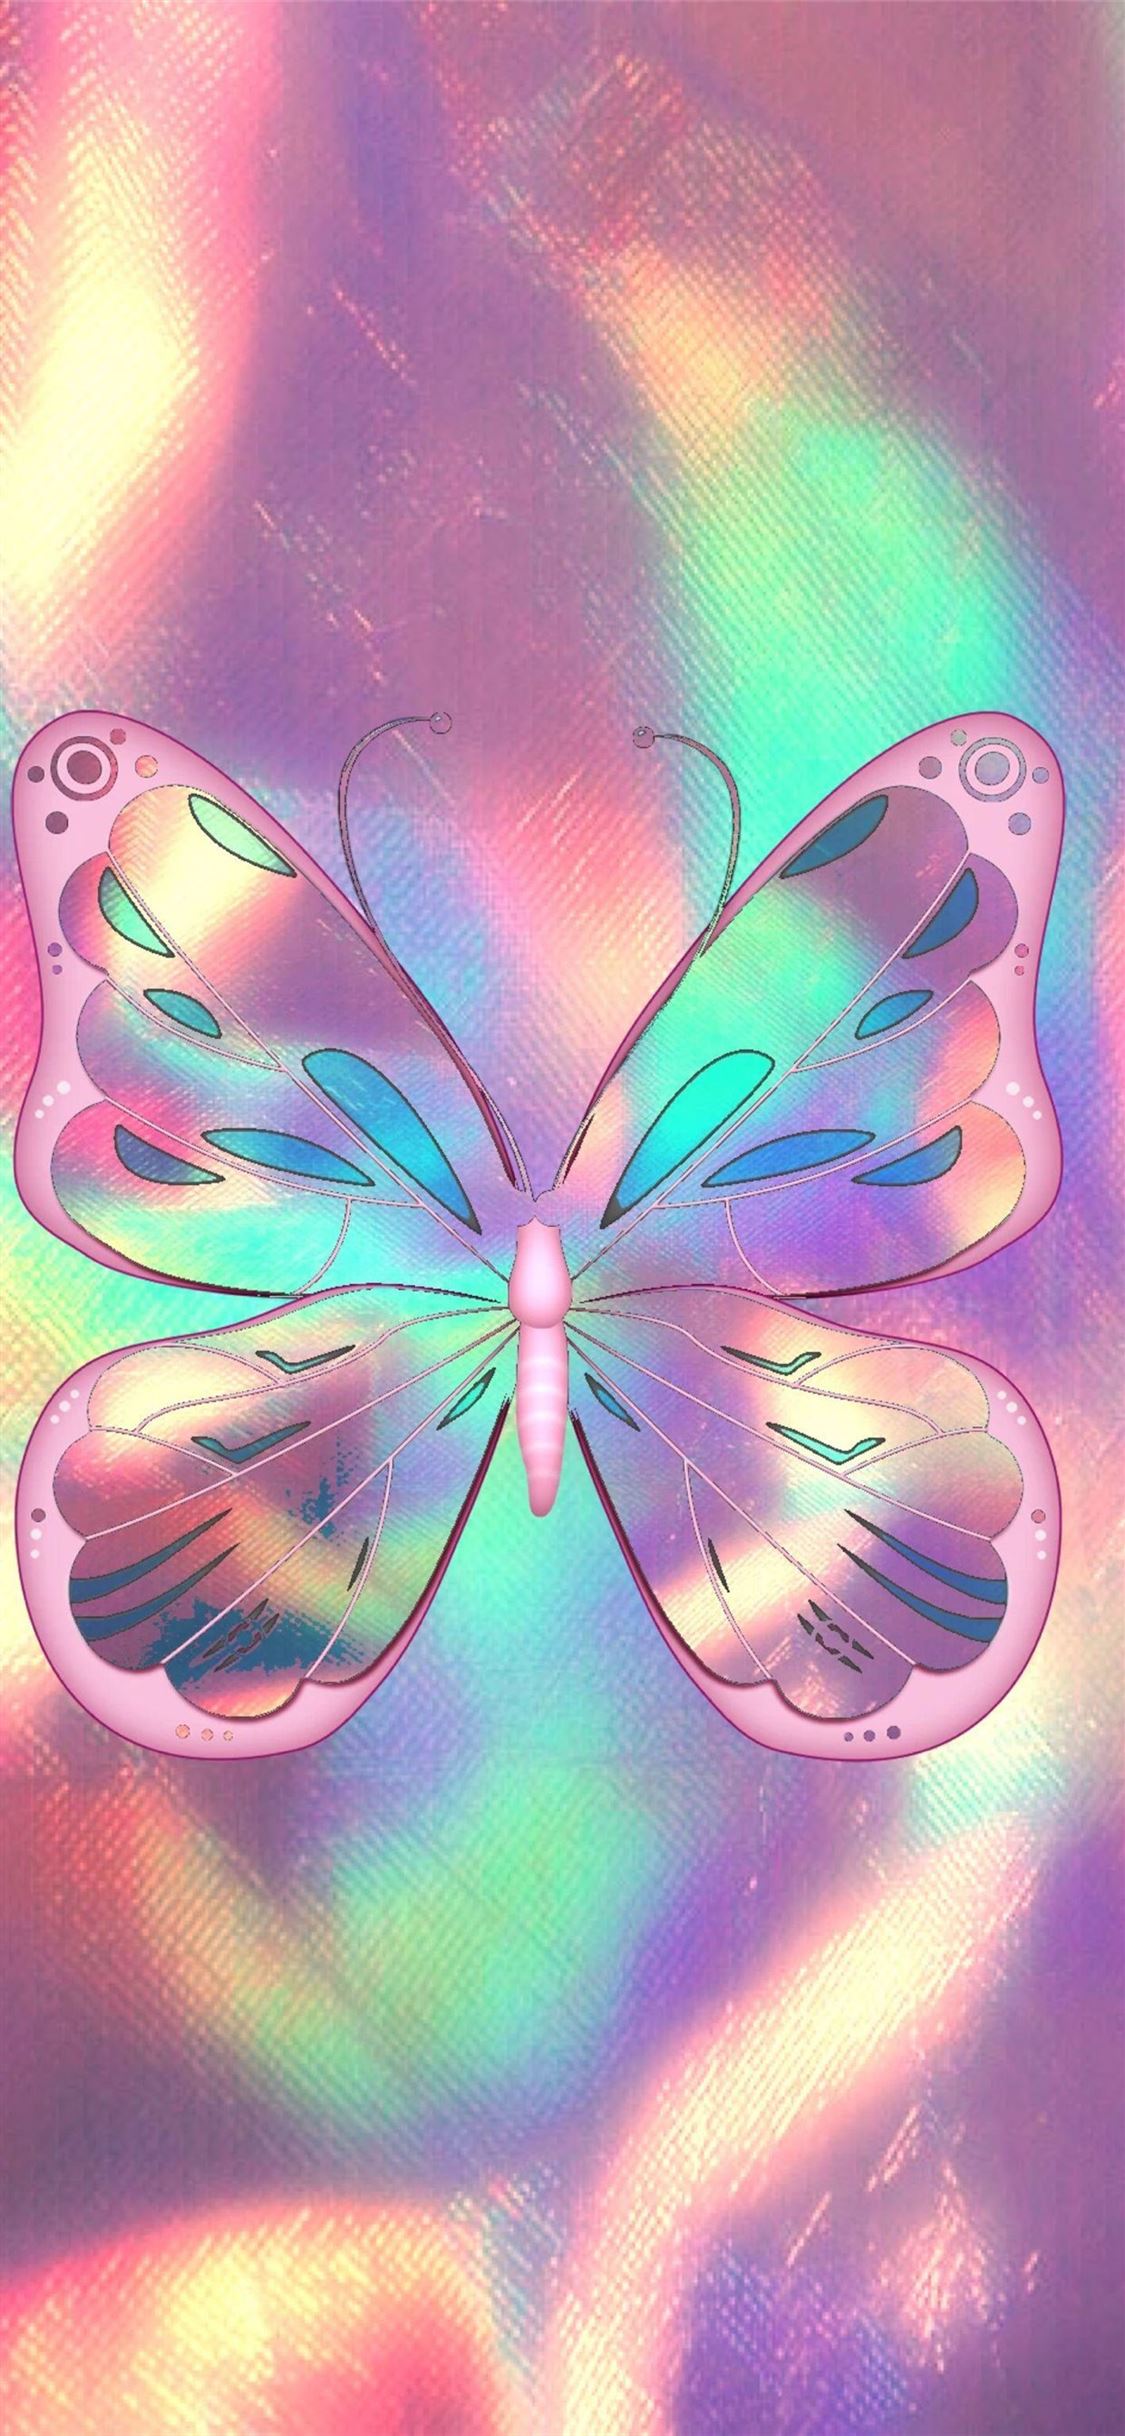 Hình nền bướm tuyệt đẹp HD cho iPhone X - một nét đẹp hoàn hảo như bướm với màu sắc và hình dáng tuyệt vời. Hãy để hình nền này thổi luồng gió mới vào điện thoại của bạn và mang đến sự yên bình, sự yêu thương và sự đam mê.